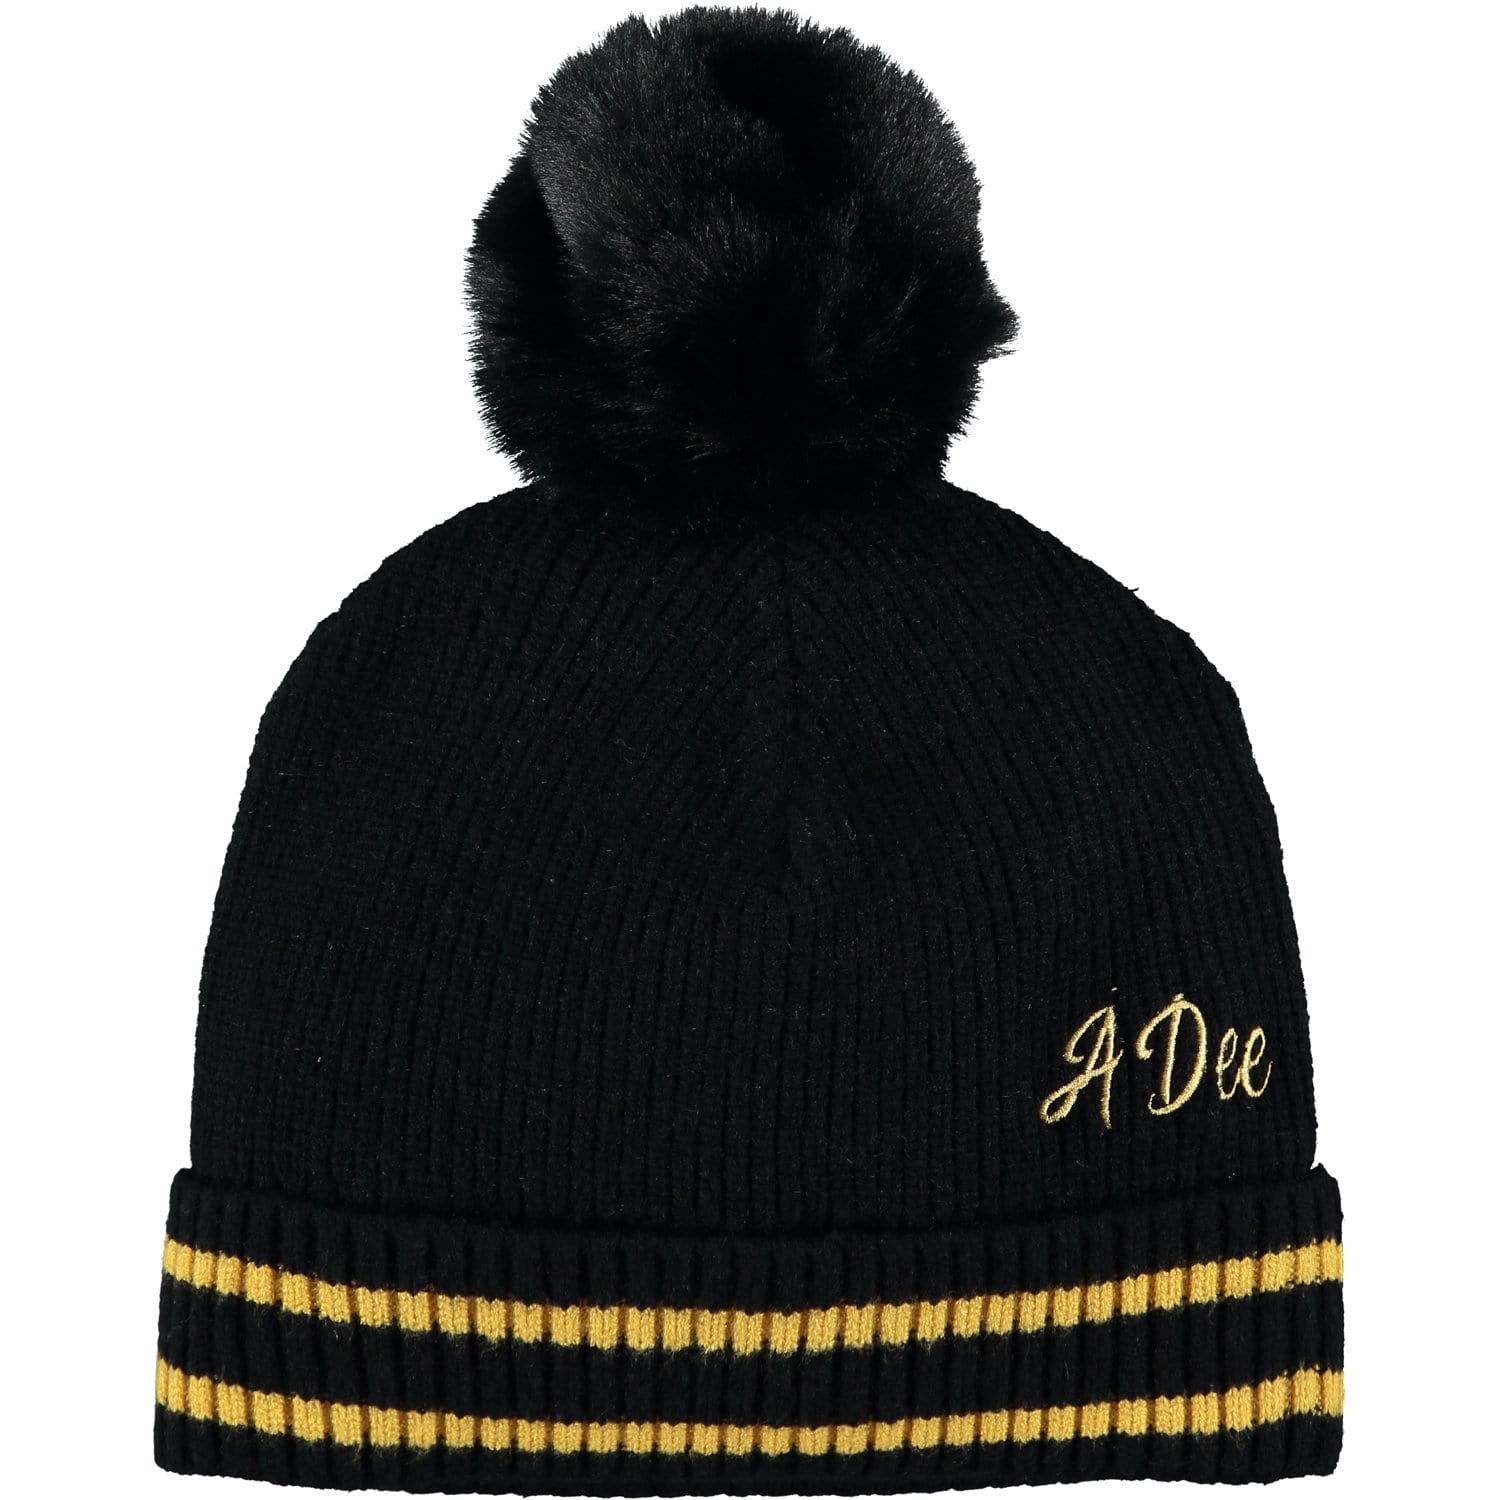 A DEE - Pom Pom Hat - Black